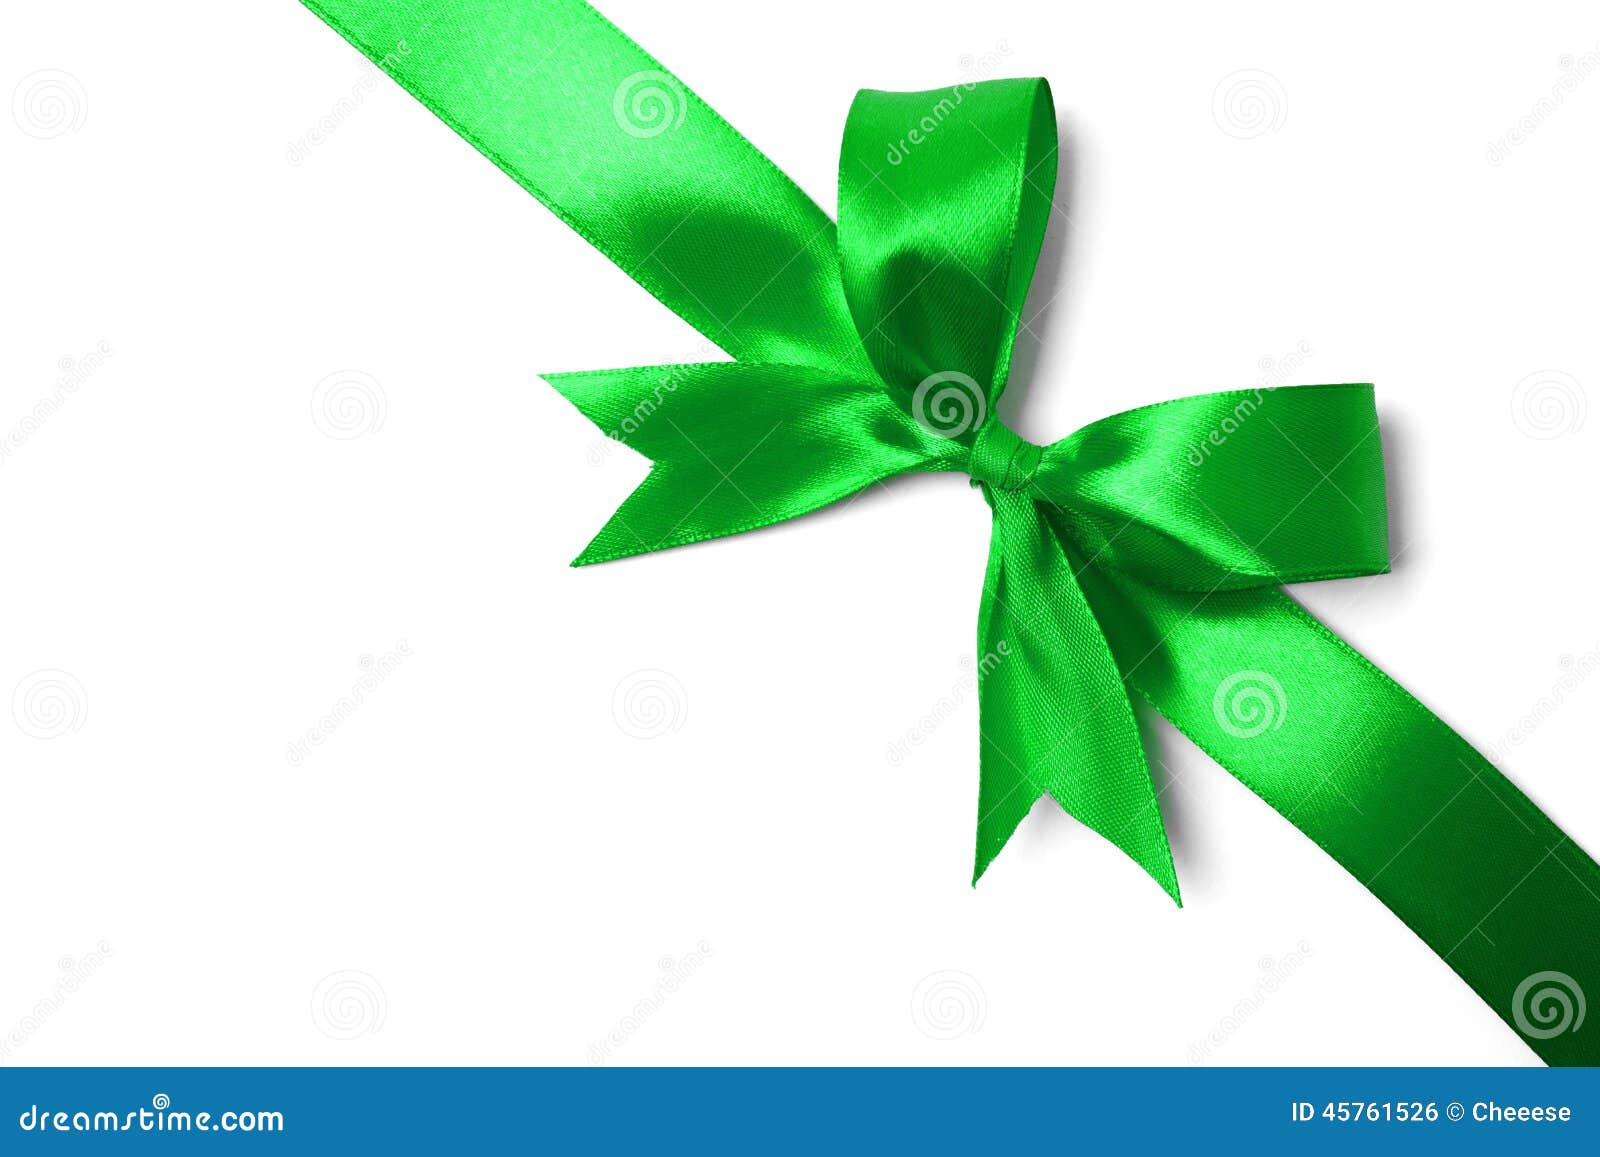 Бантик на зеленом фоне. Зеленый бант с лентой. Лента зеленая. Подарочный бант зеленого цвета. Зеленая подарочная лента.